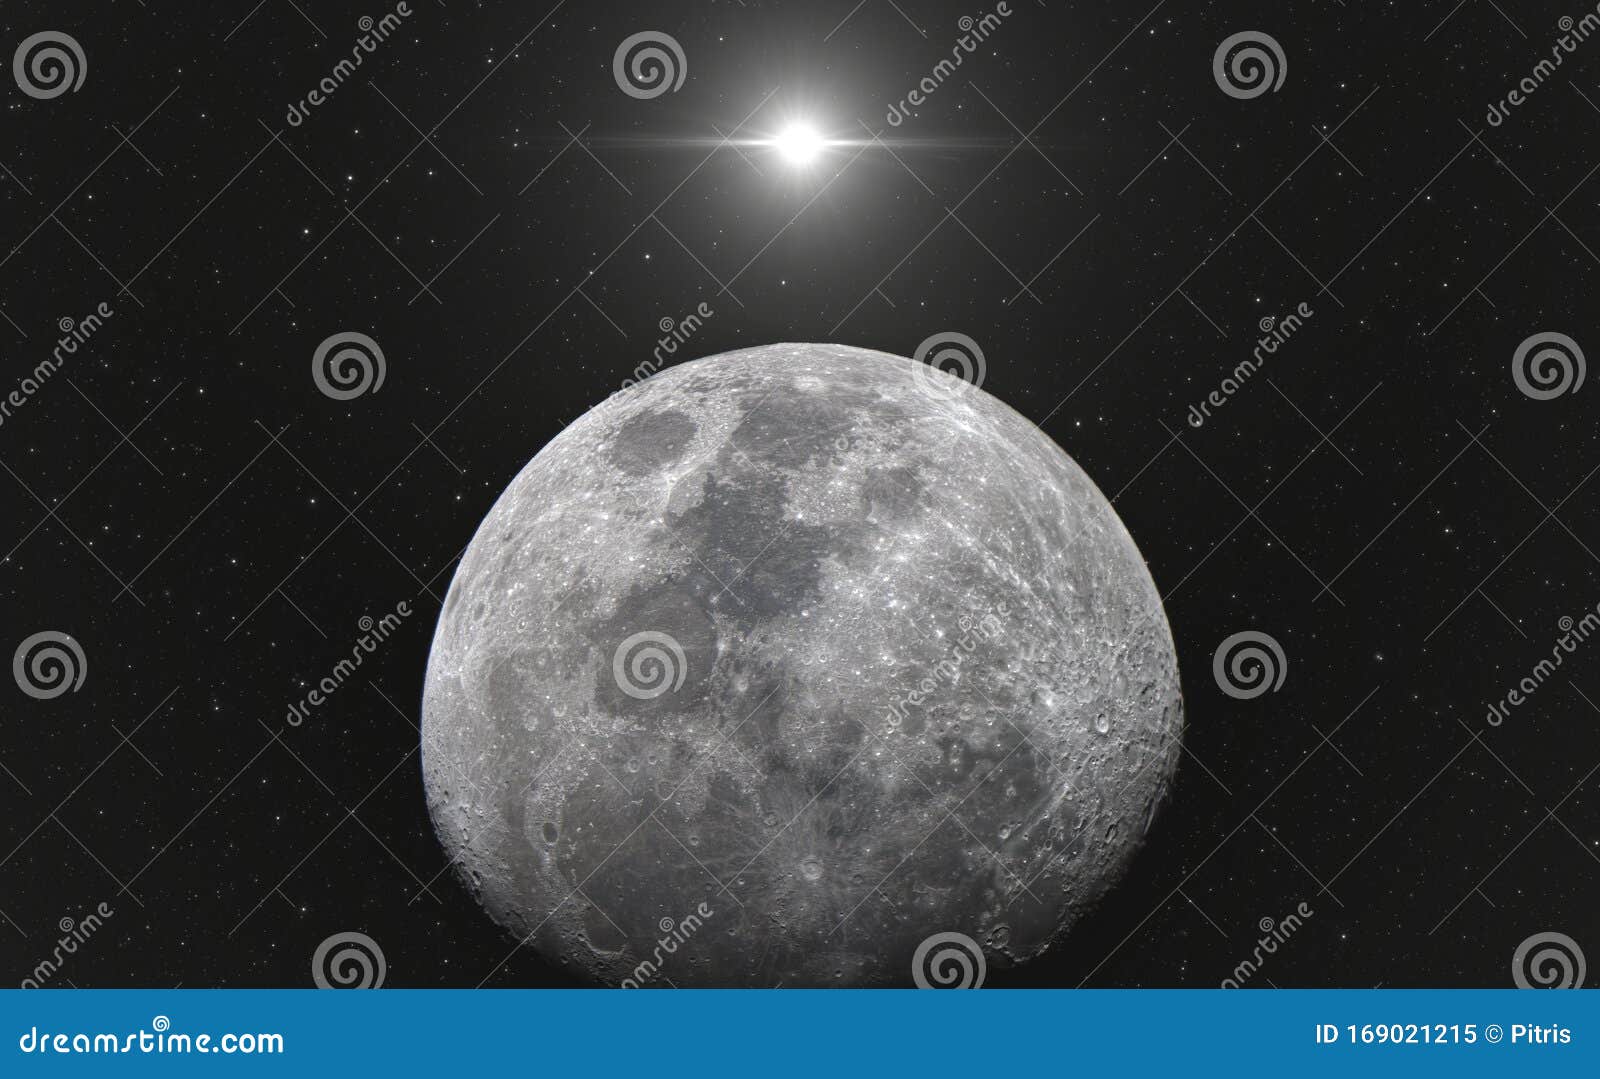 通过天文望远镜看月亮，真的很棒~-南充论坛-麻辣社区